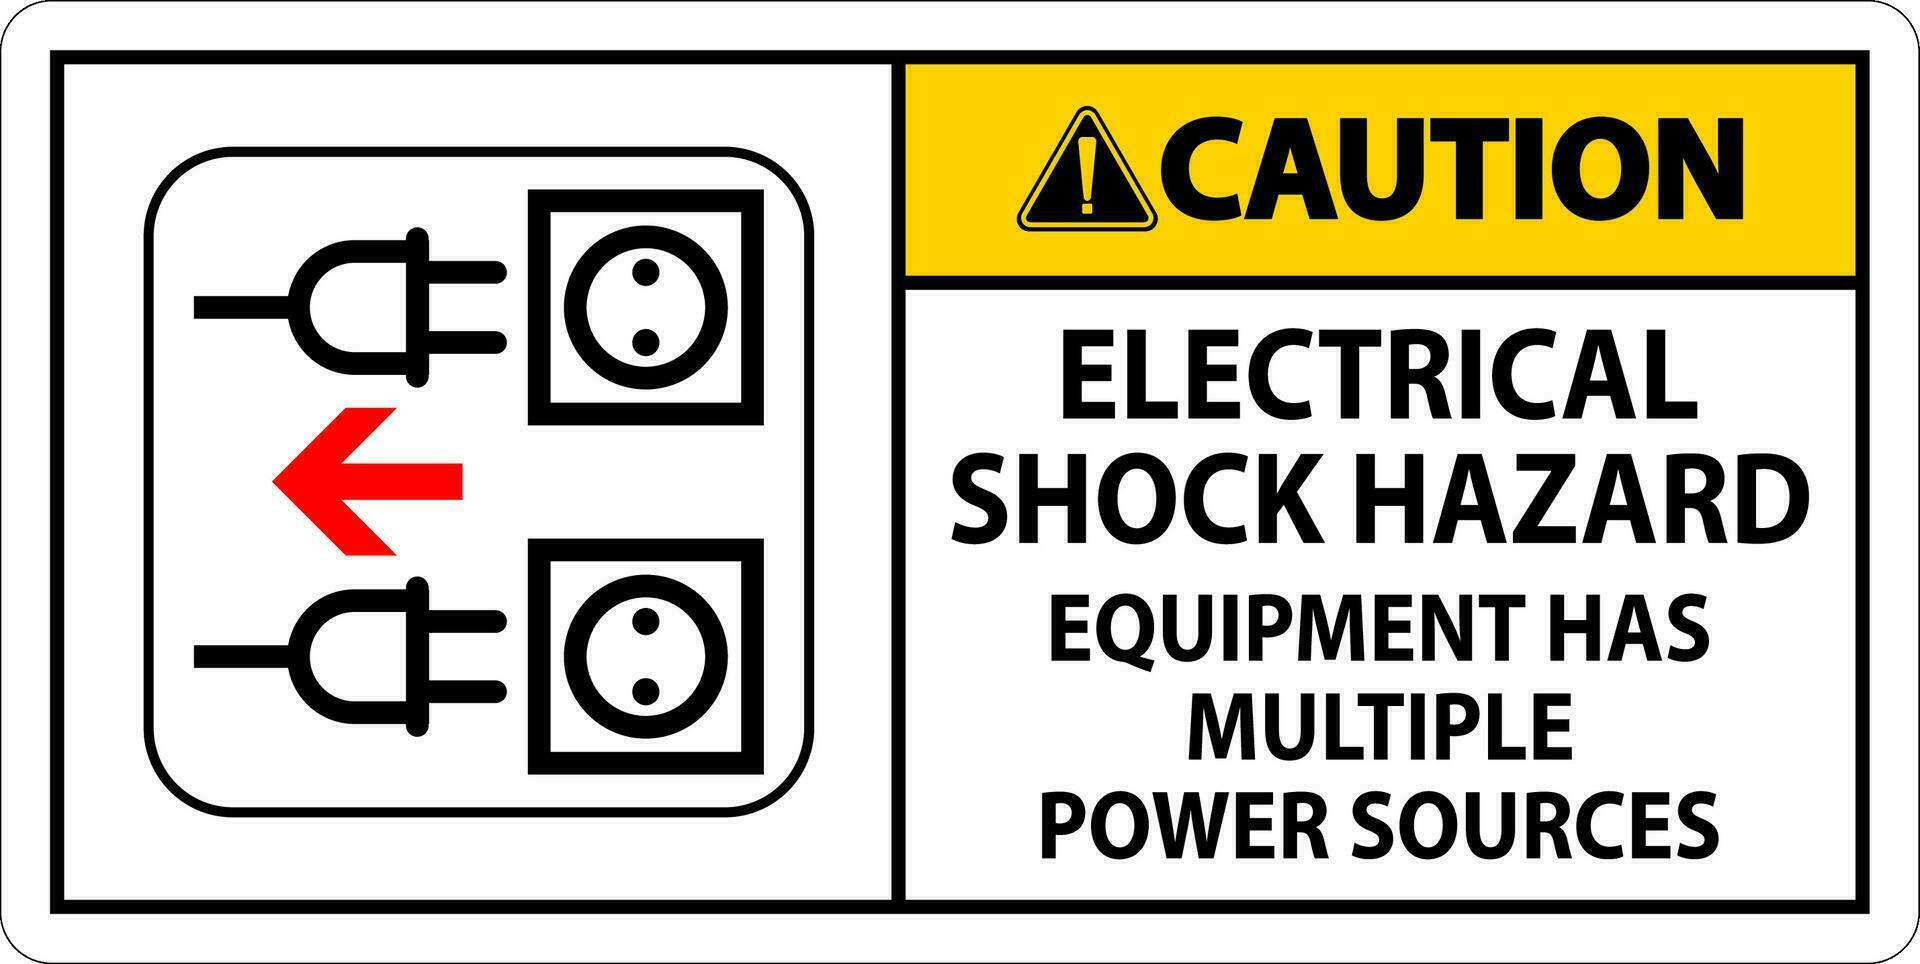 mise en garde signe électrique choc danger, équipement a plusieurs Puissance sources vecteur